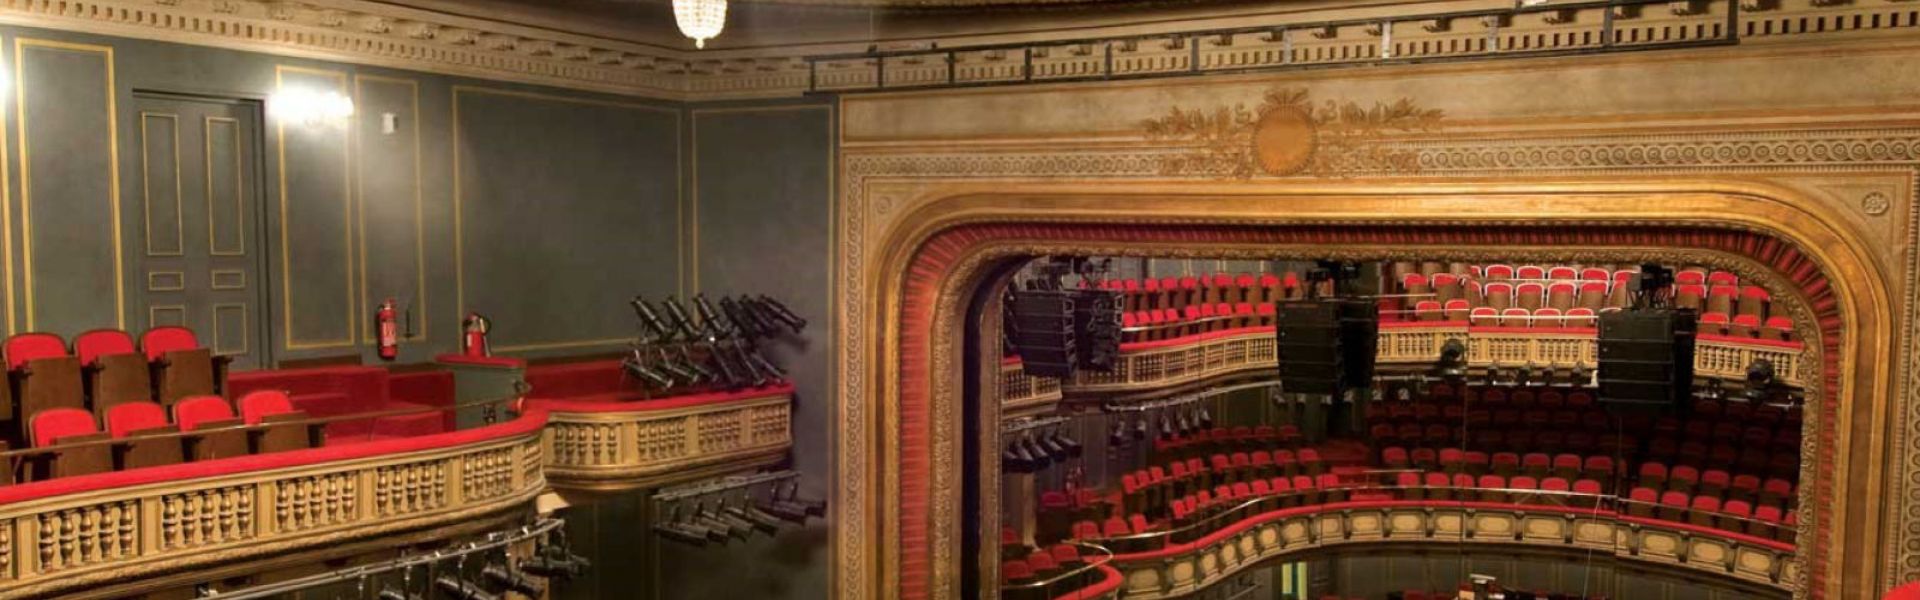 Εθνικό Θέατρο - Κεντρική Σκηνή